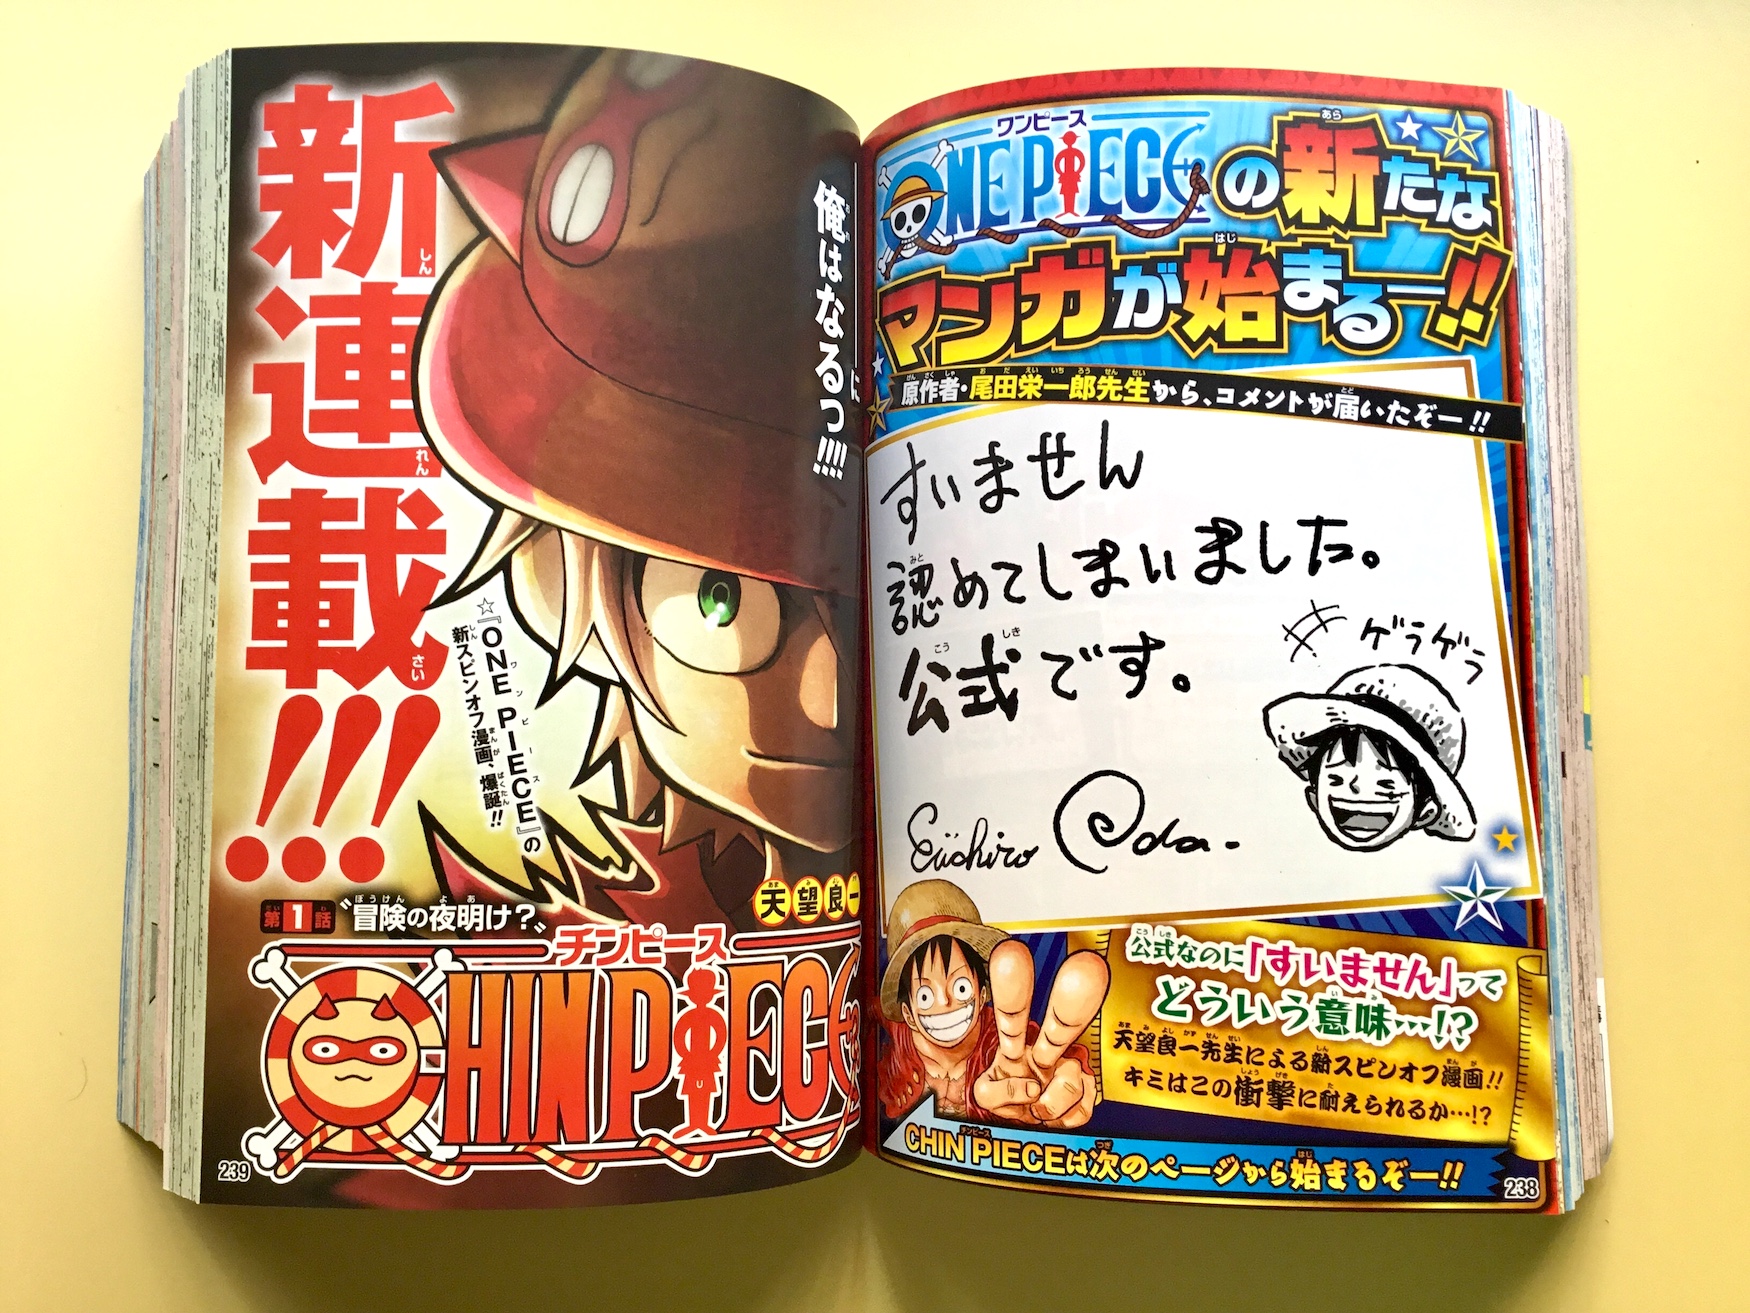 Chin Piece Nuevo Spin Off De One Piece En La Saikyo Jump Pagina 2 Foro De One Piece Pirateking